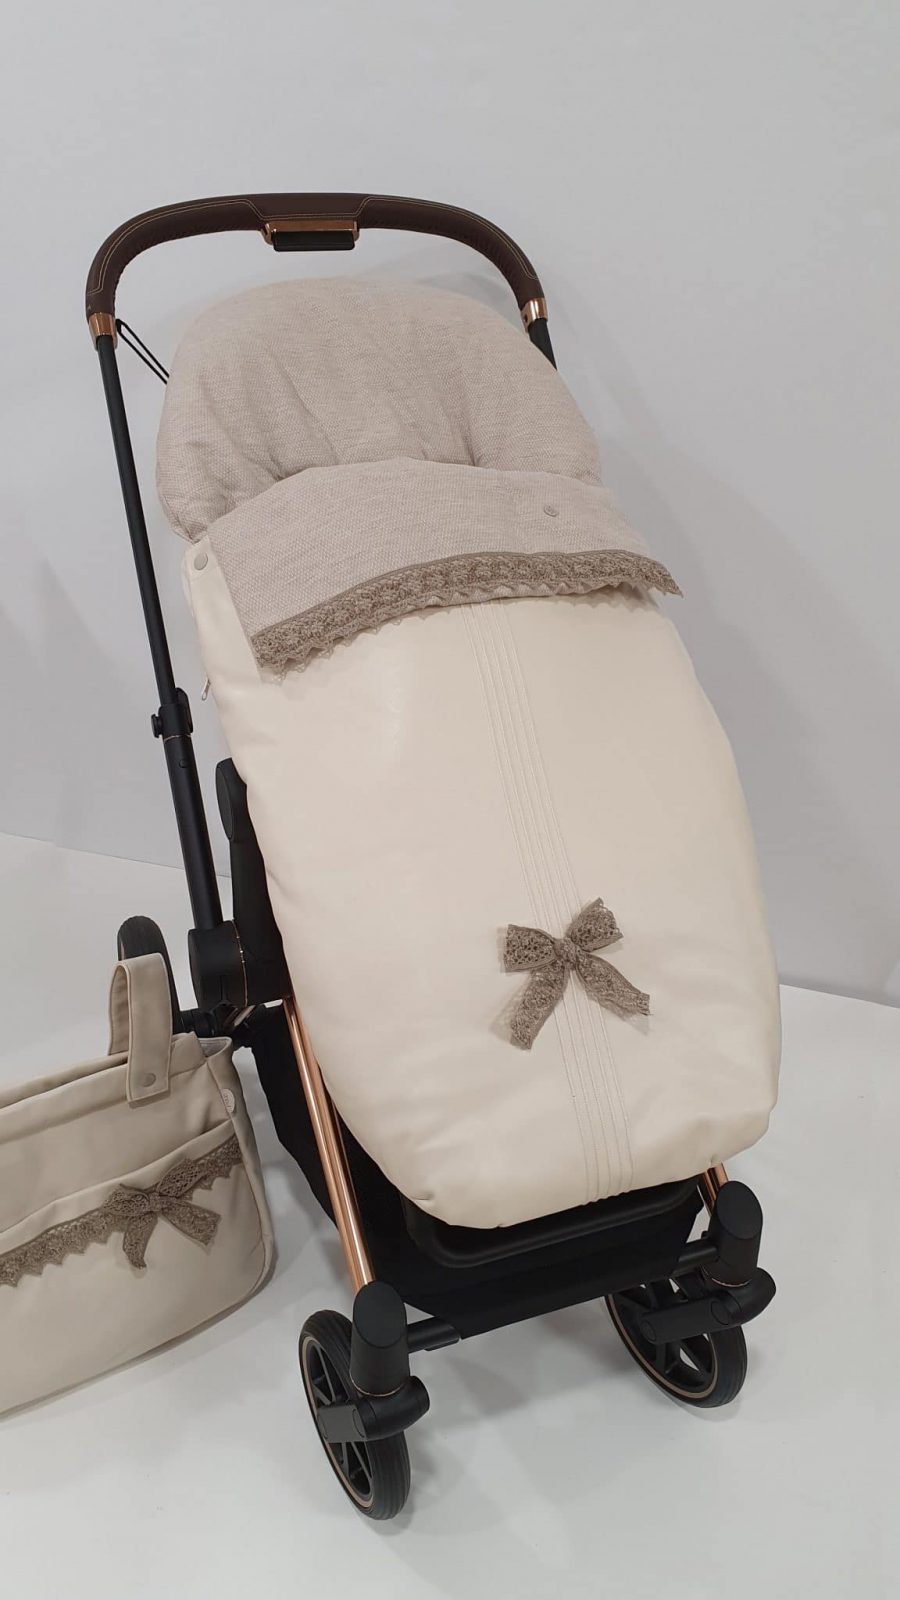 Ver comprar saco silla de paseo universal color natural beige rima marca paz rodriguez ver precio en descuento online